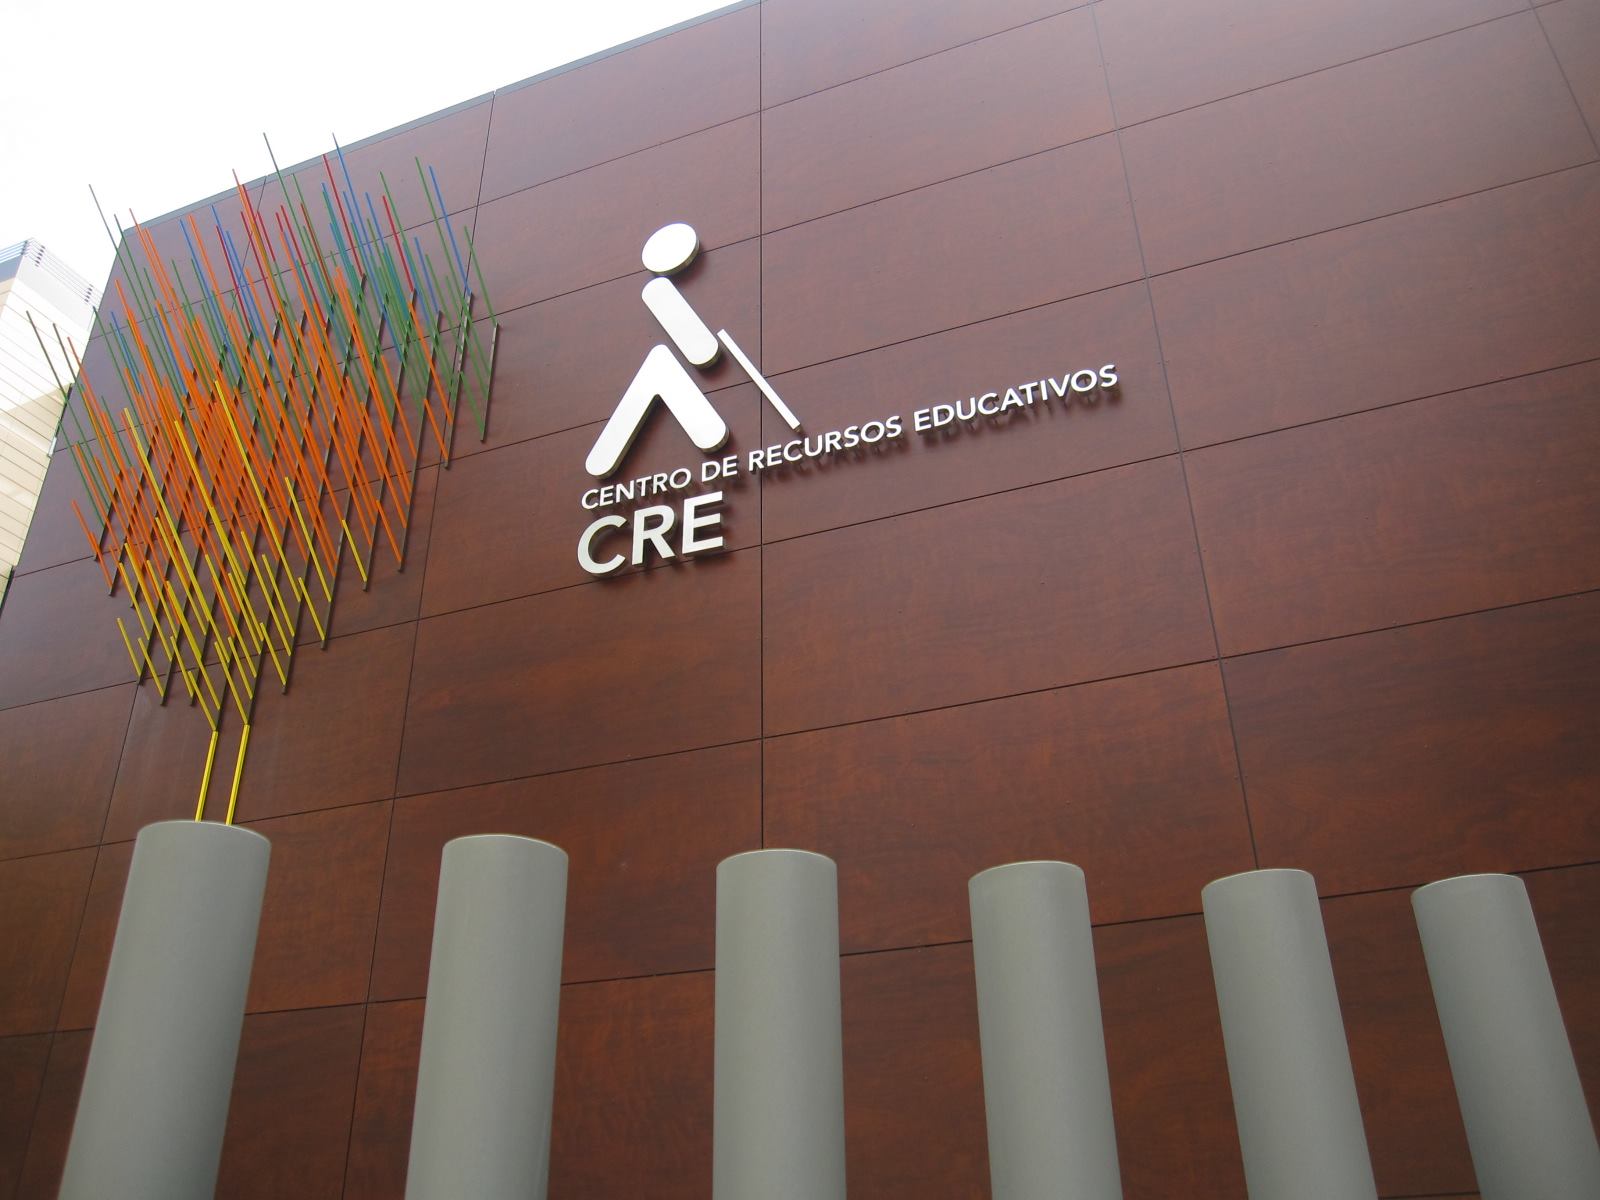 Detalle de la fachada del edificio del CRE en Madrid, donde hay las letras en metal del logo de ONCE, el texto CRE Centro de Recursos Educativos y una instalación de hilos metálicos de colores.